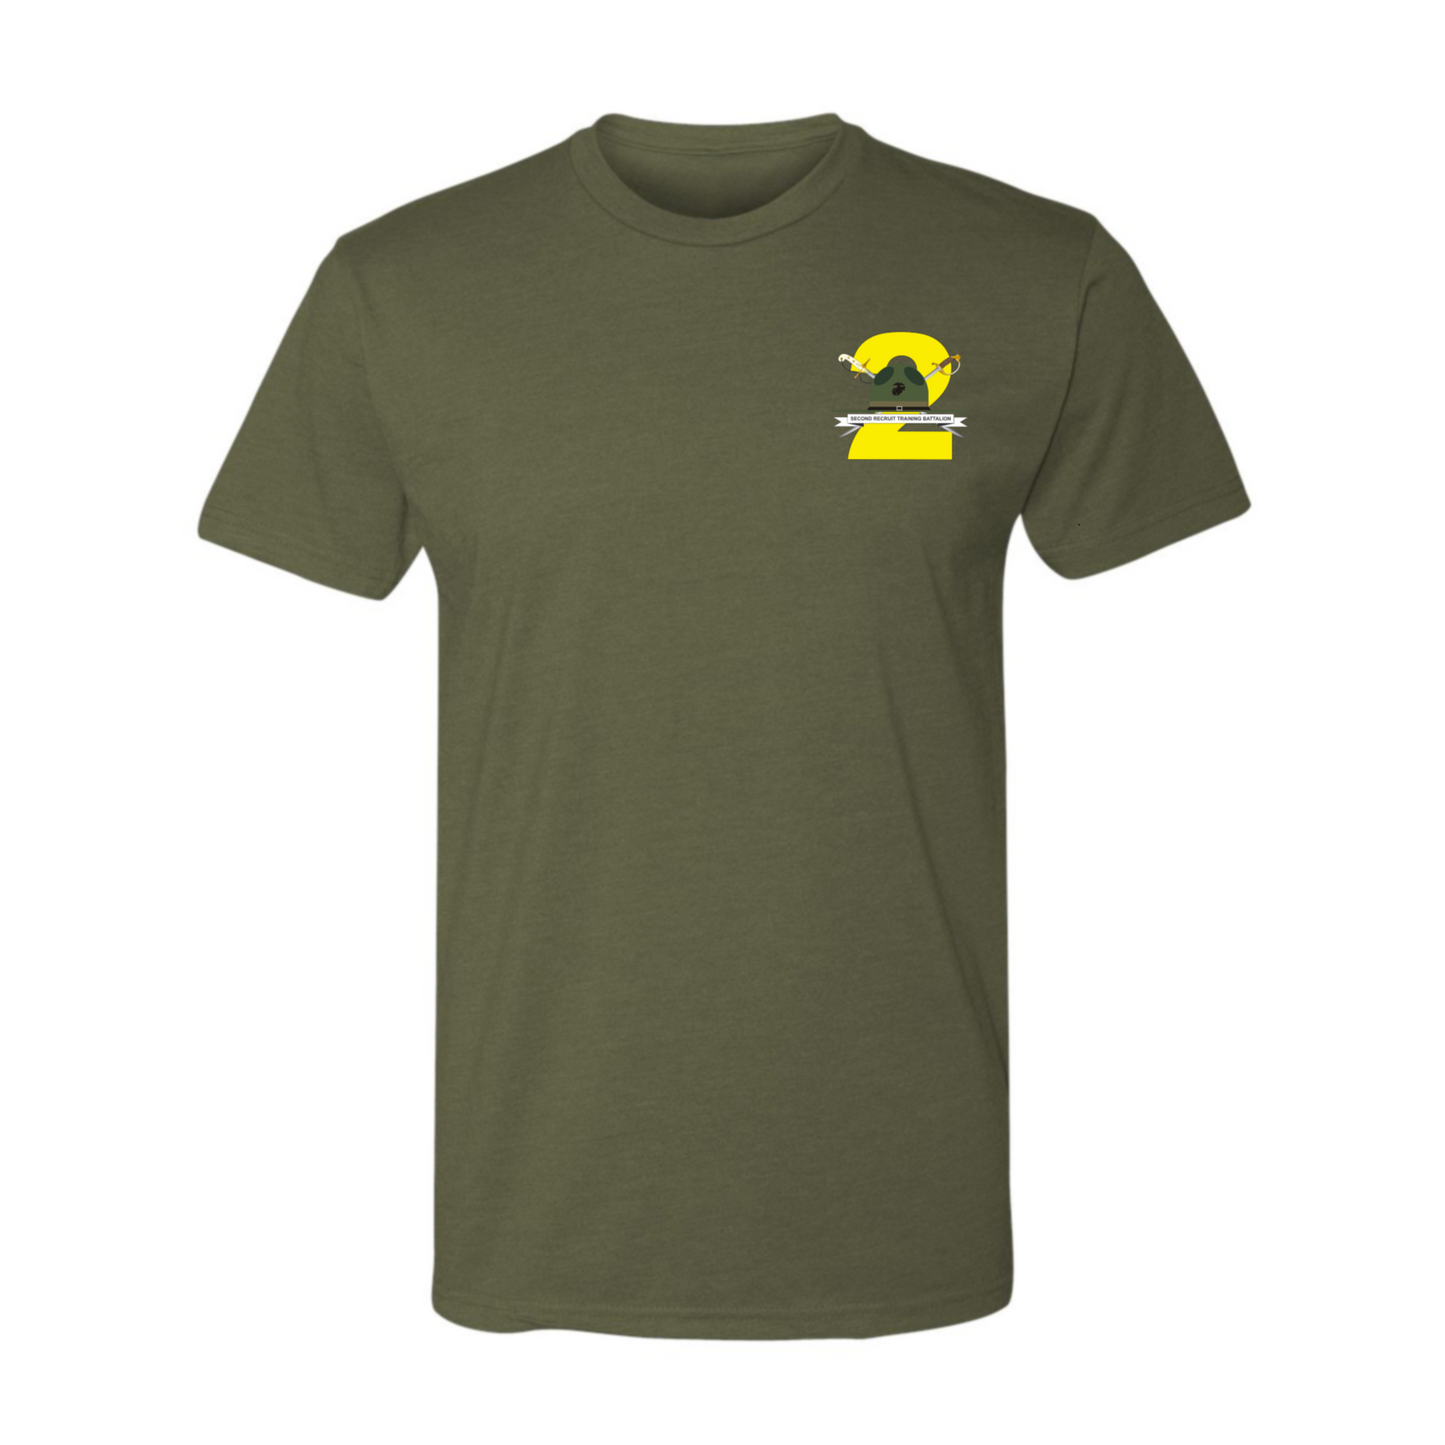 2nd Recruit Battalion Shirt